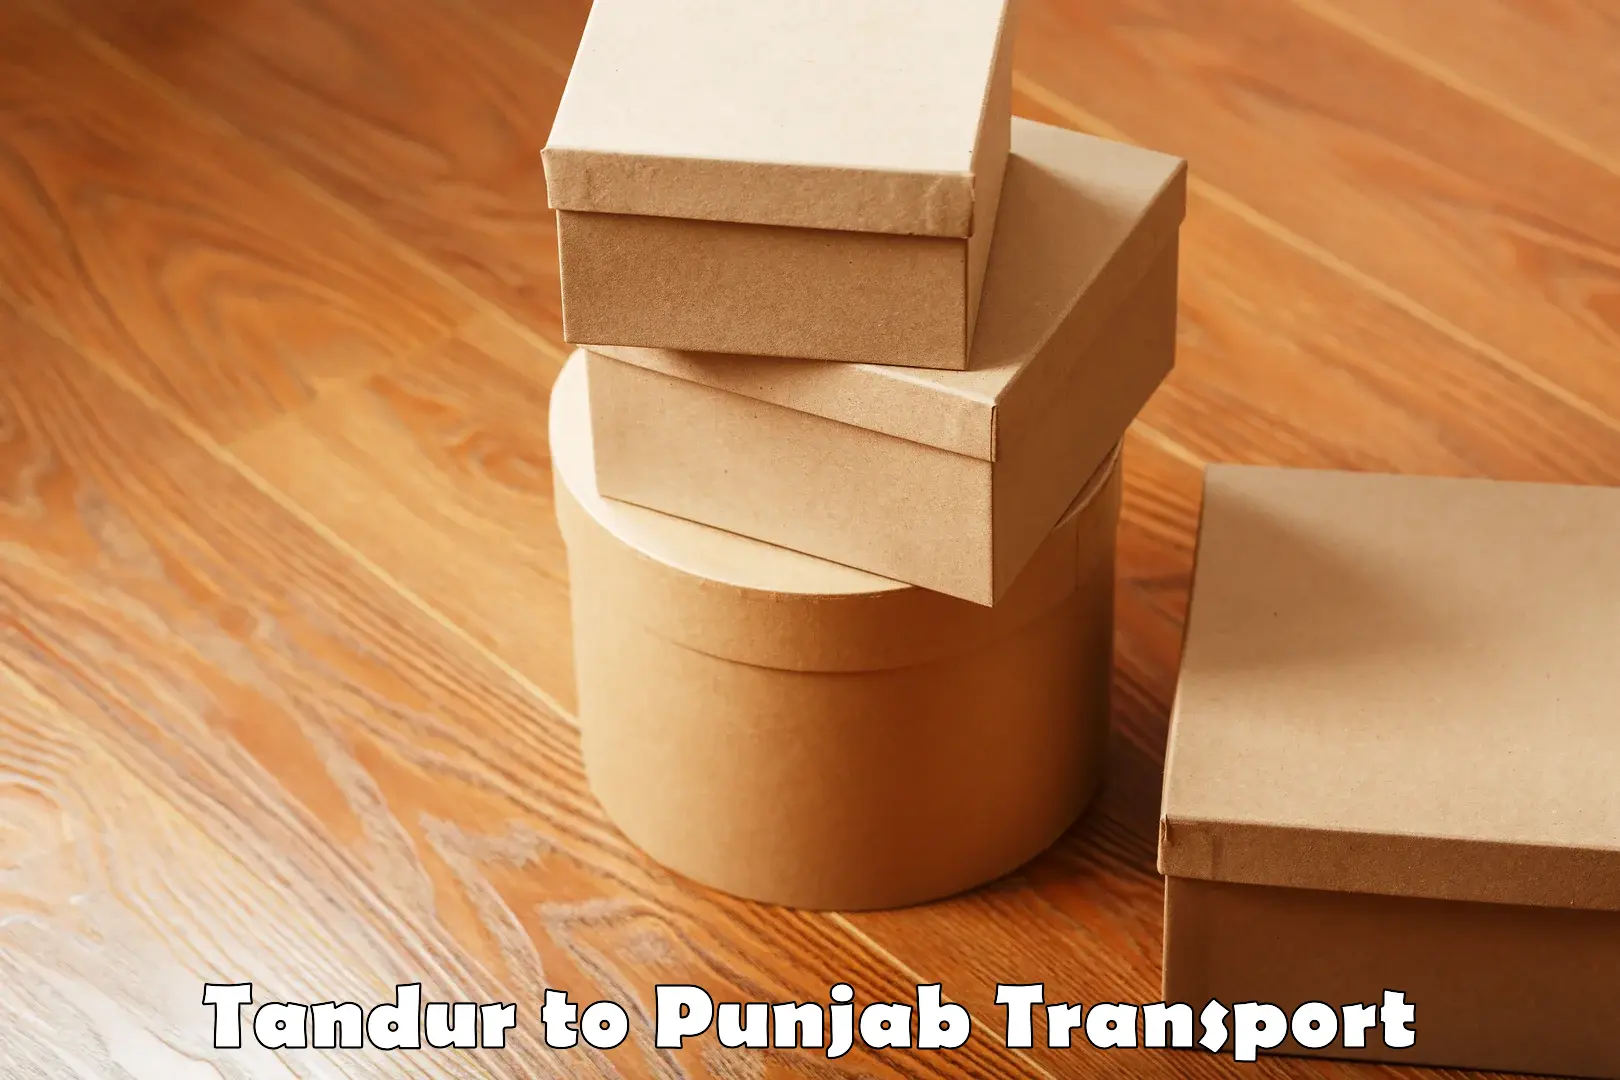 Pick up transport service Tandur to Dera Bassi